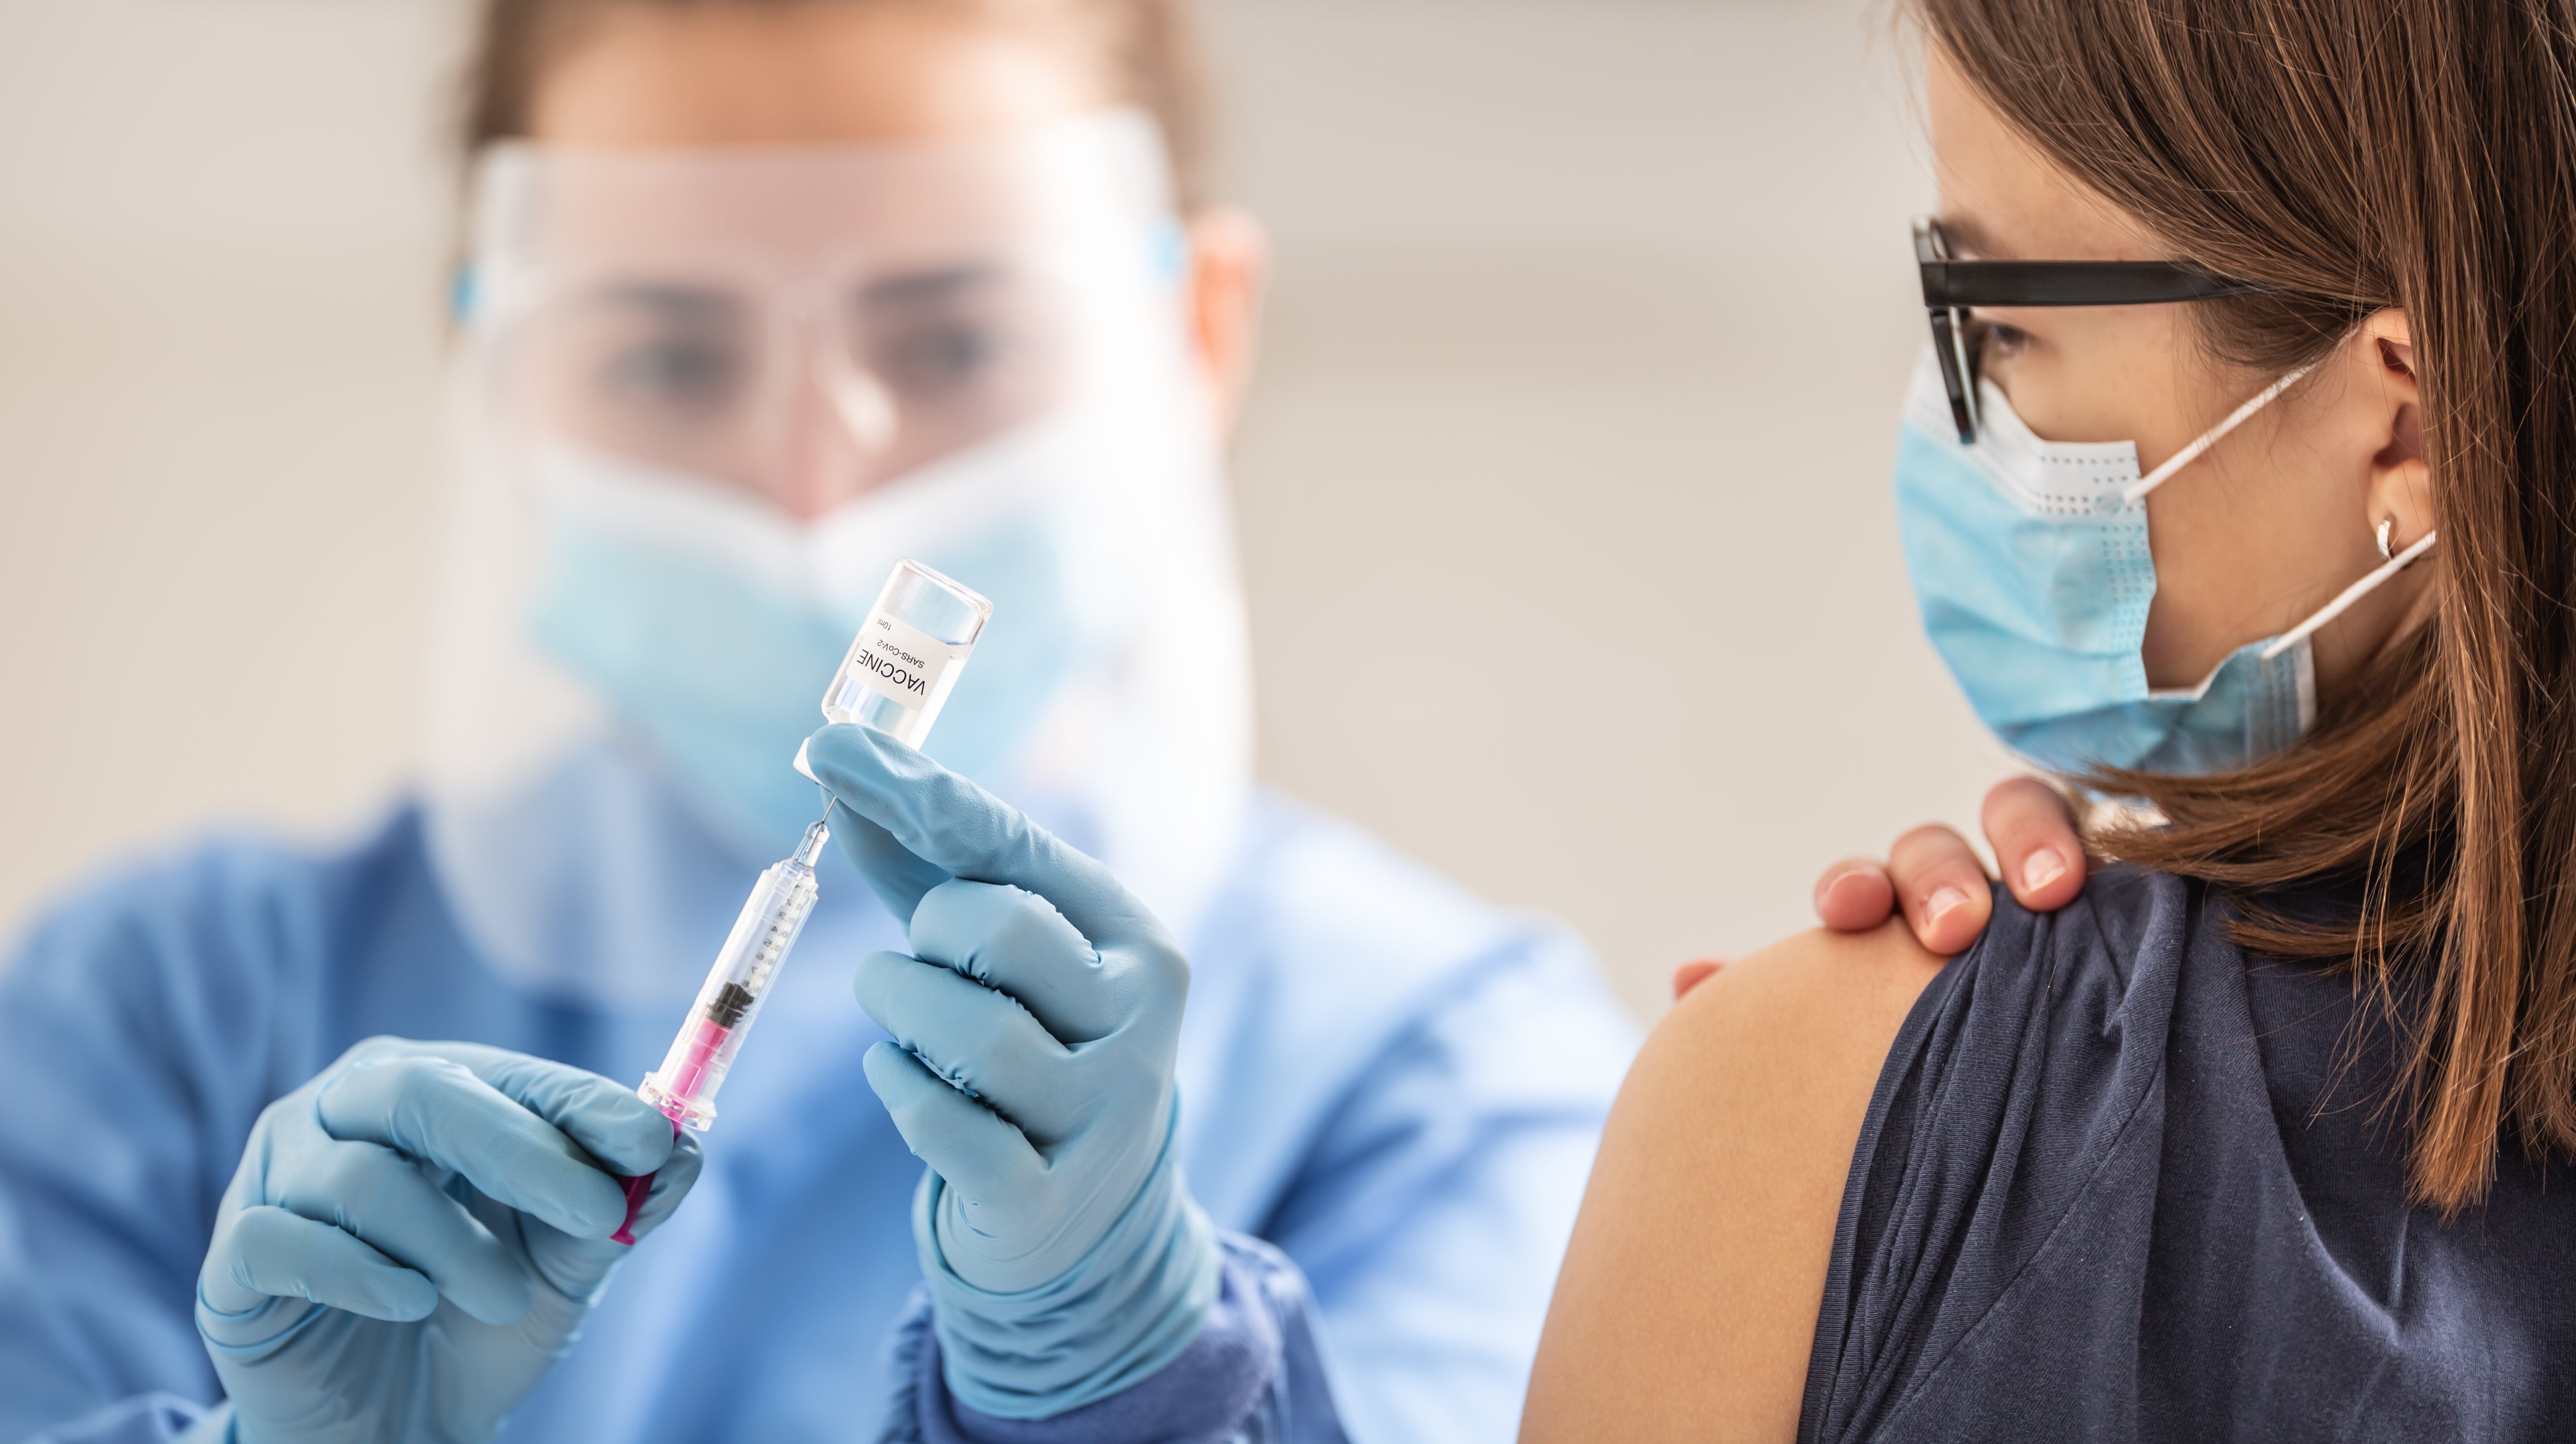 السعودية ضد في كم عدد كورونا الملقحين التطعيم ضد